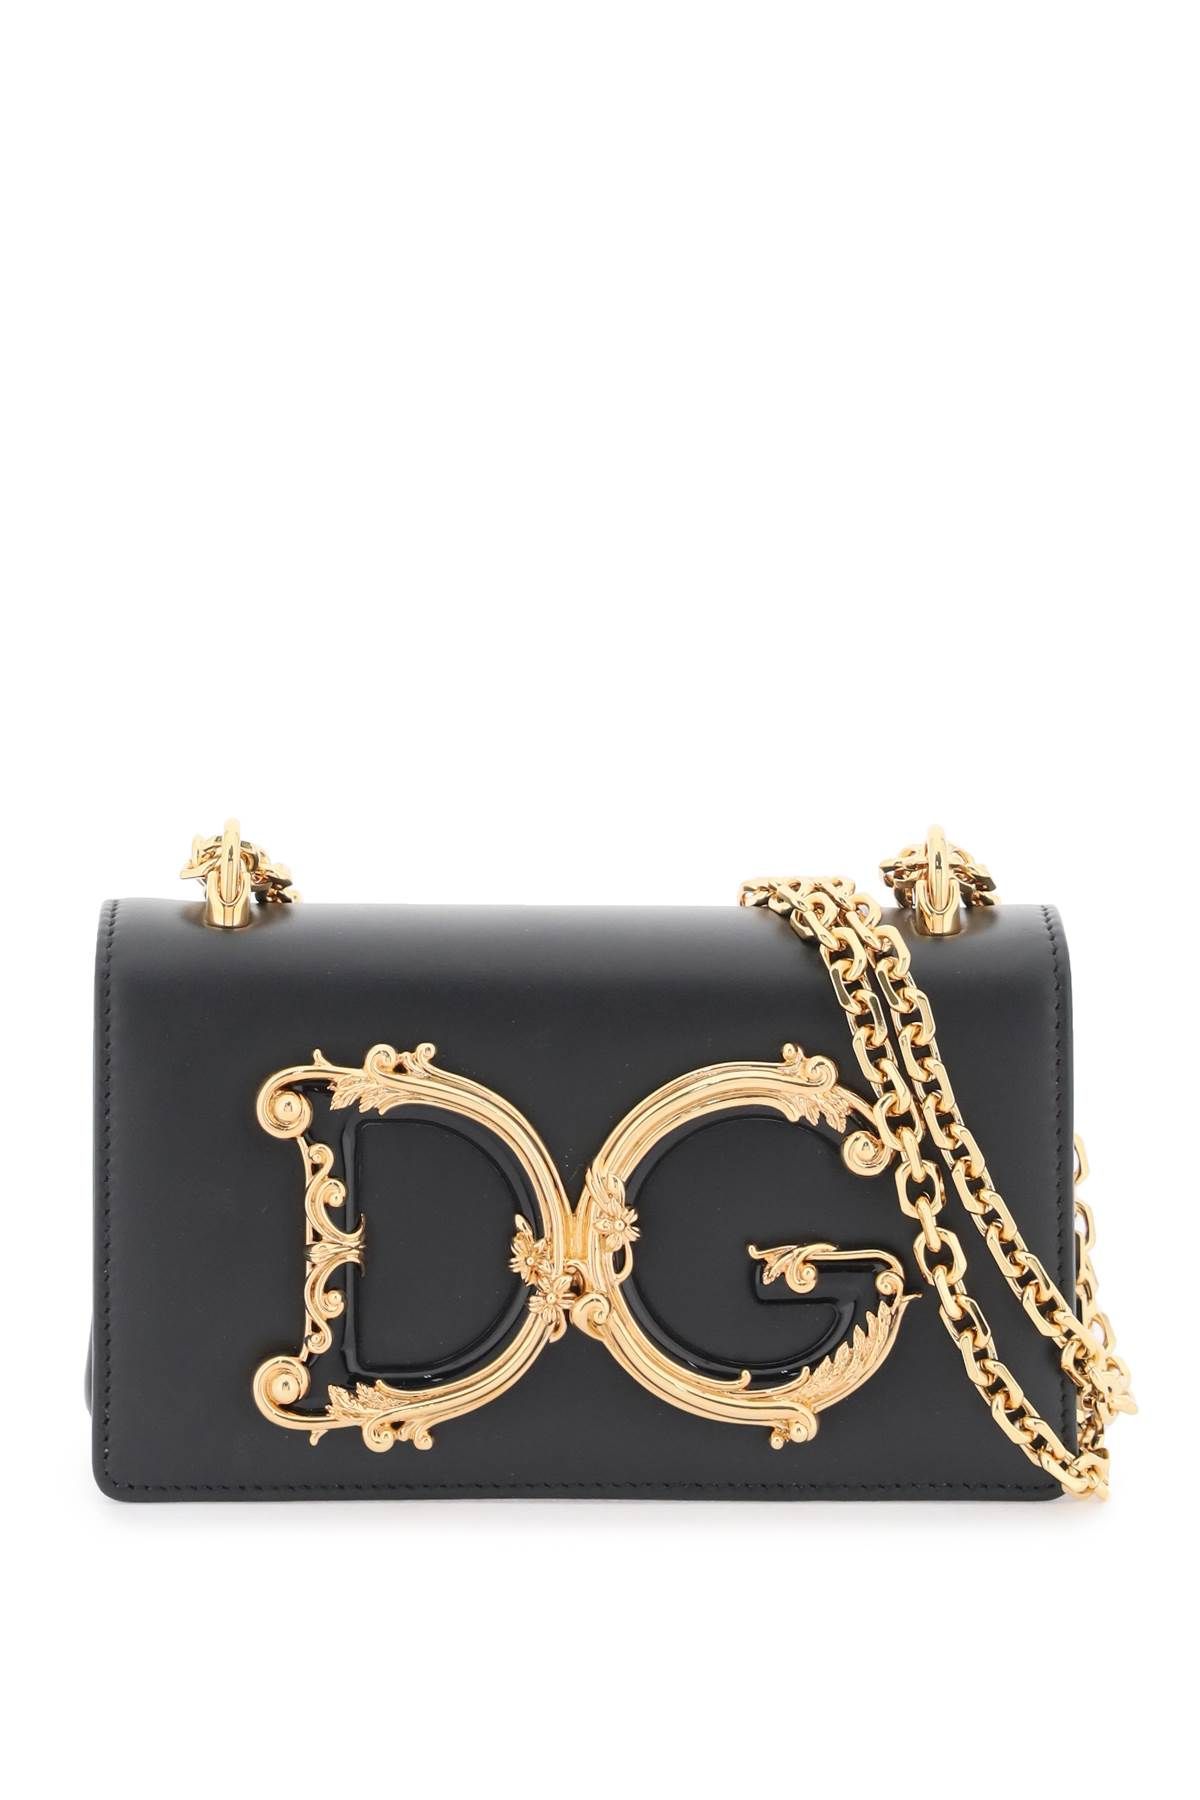 Dolce & Gabbana DOLCE & GABBANA dg girls mini bag